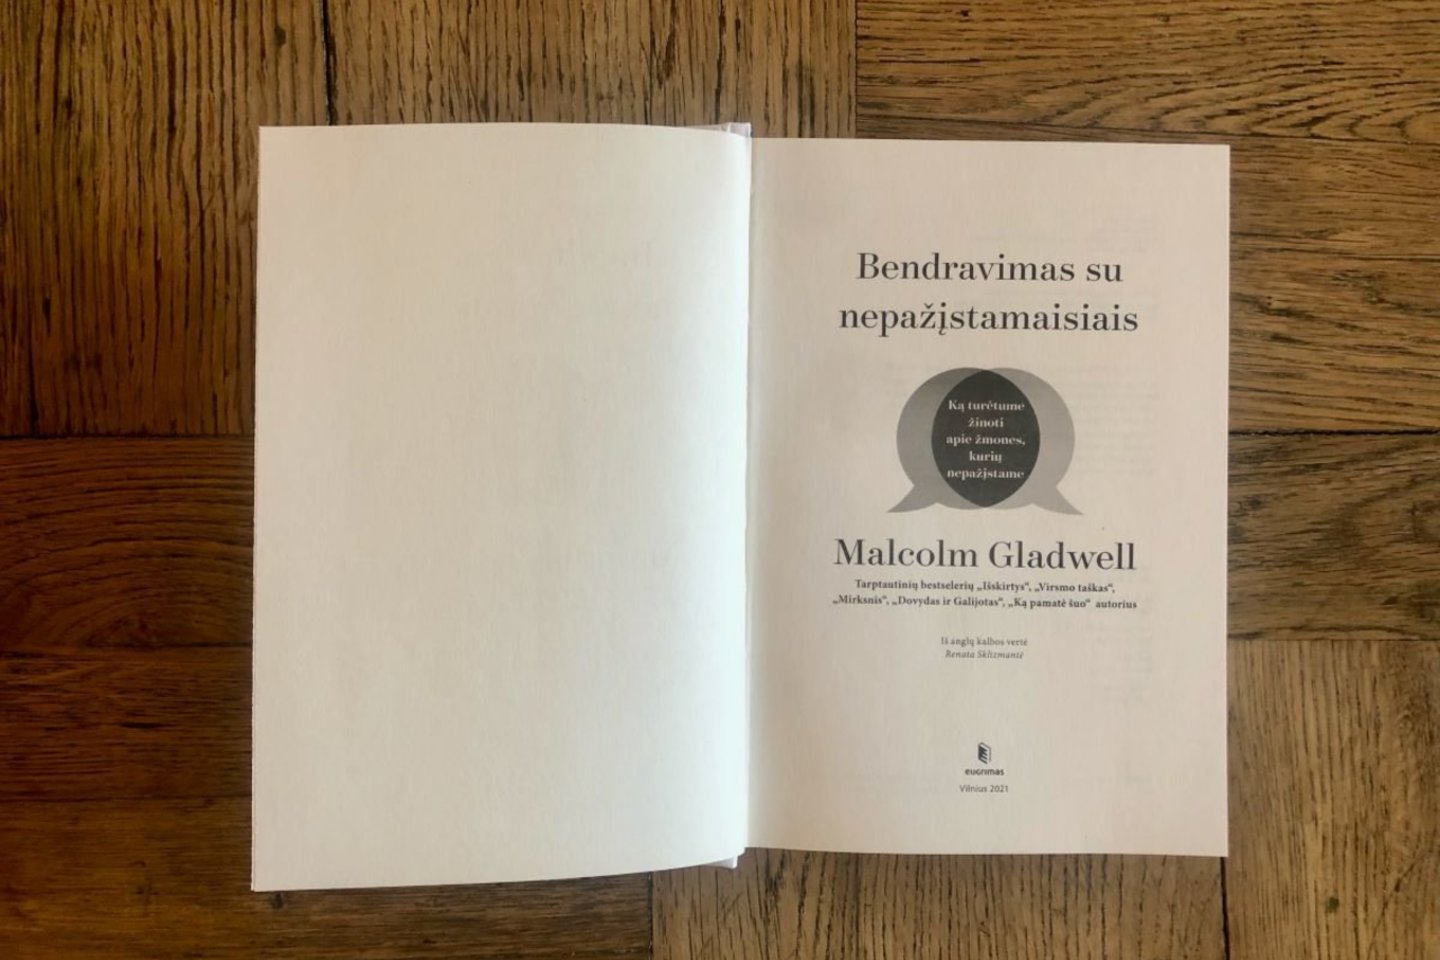 M.Gladwellas naujausioje Lietuvoje išleistoje knygoje ir tarptautiniame bestseleryje „Bendravimas su nepažįstamaisiais“ teigia, kad nepažįstamieji nėra lengvai nuspėjami.